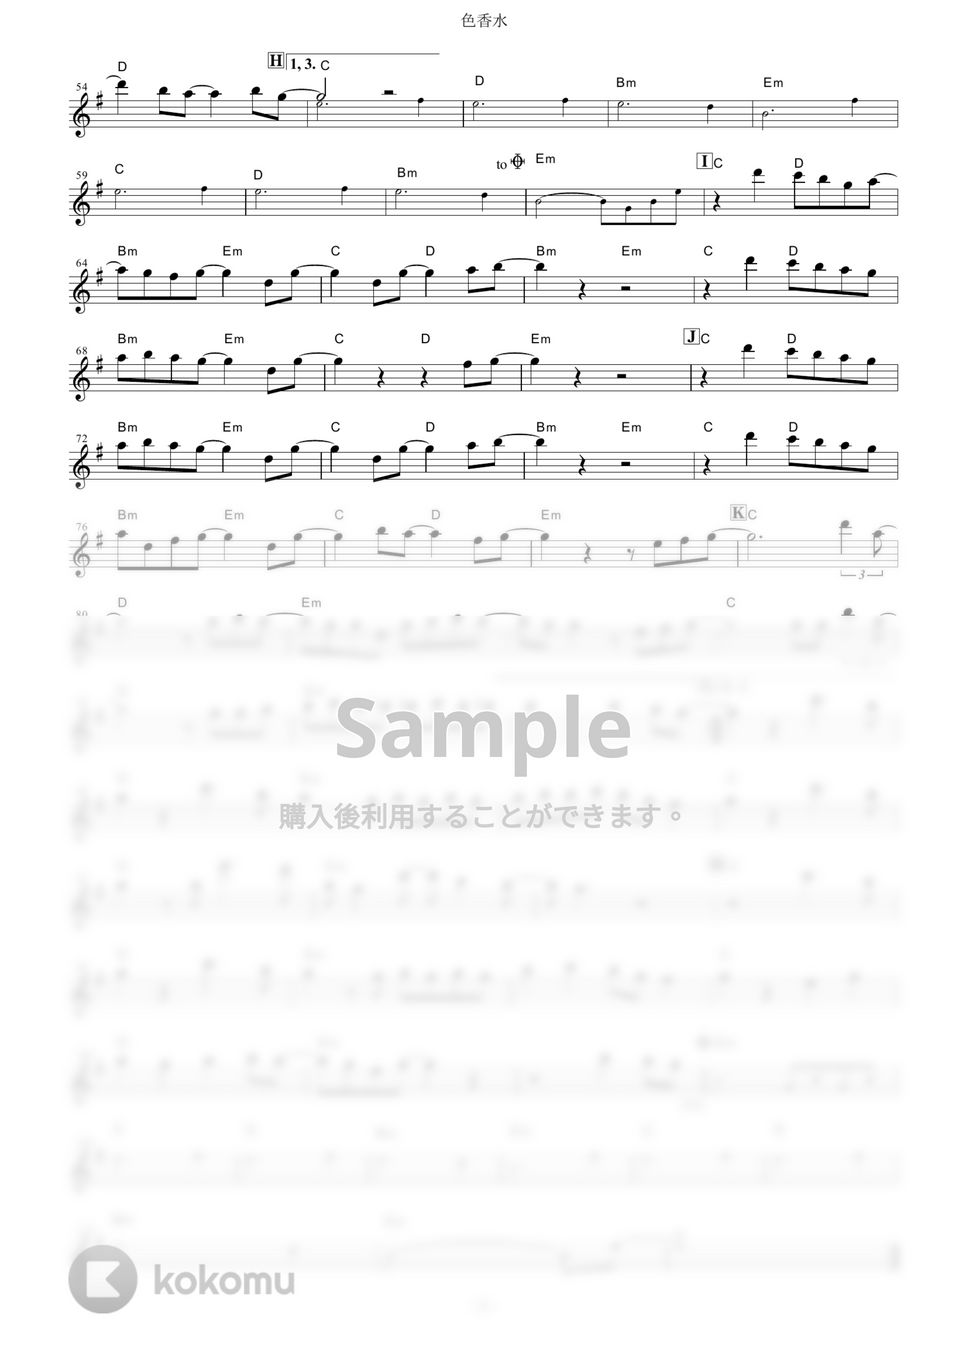 神山羊 - 色香水 (『ホリミヤ』 / in C) by muta-sax